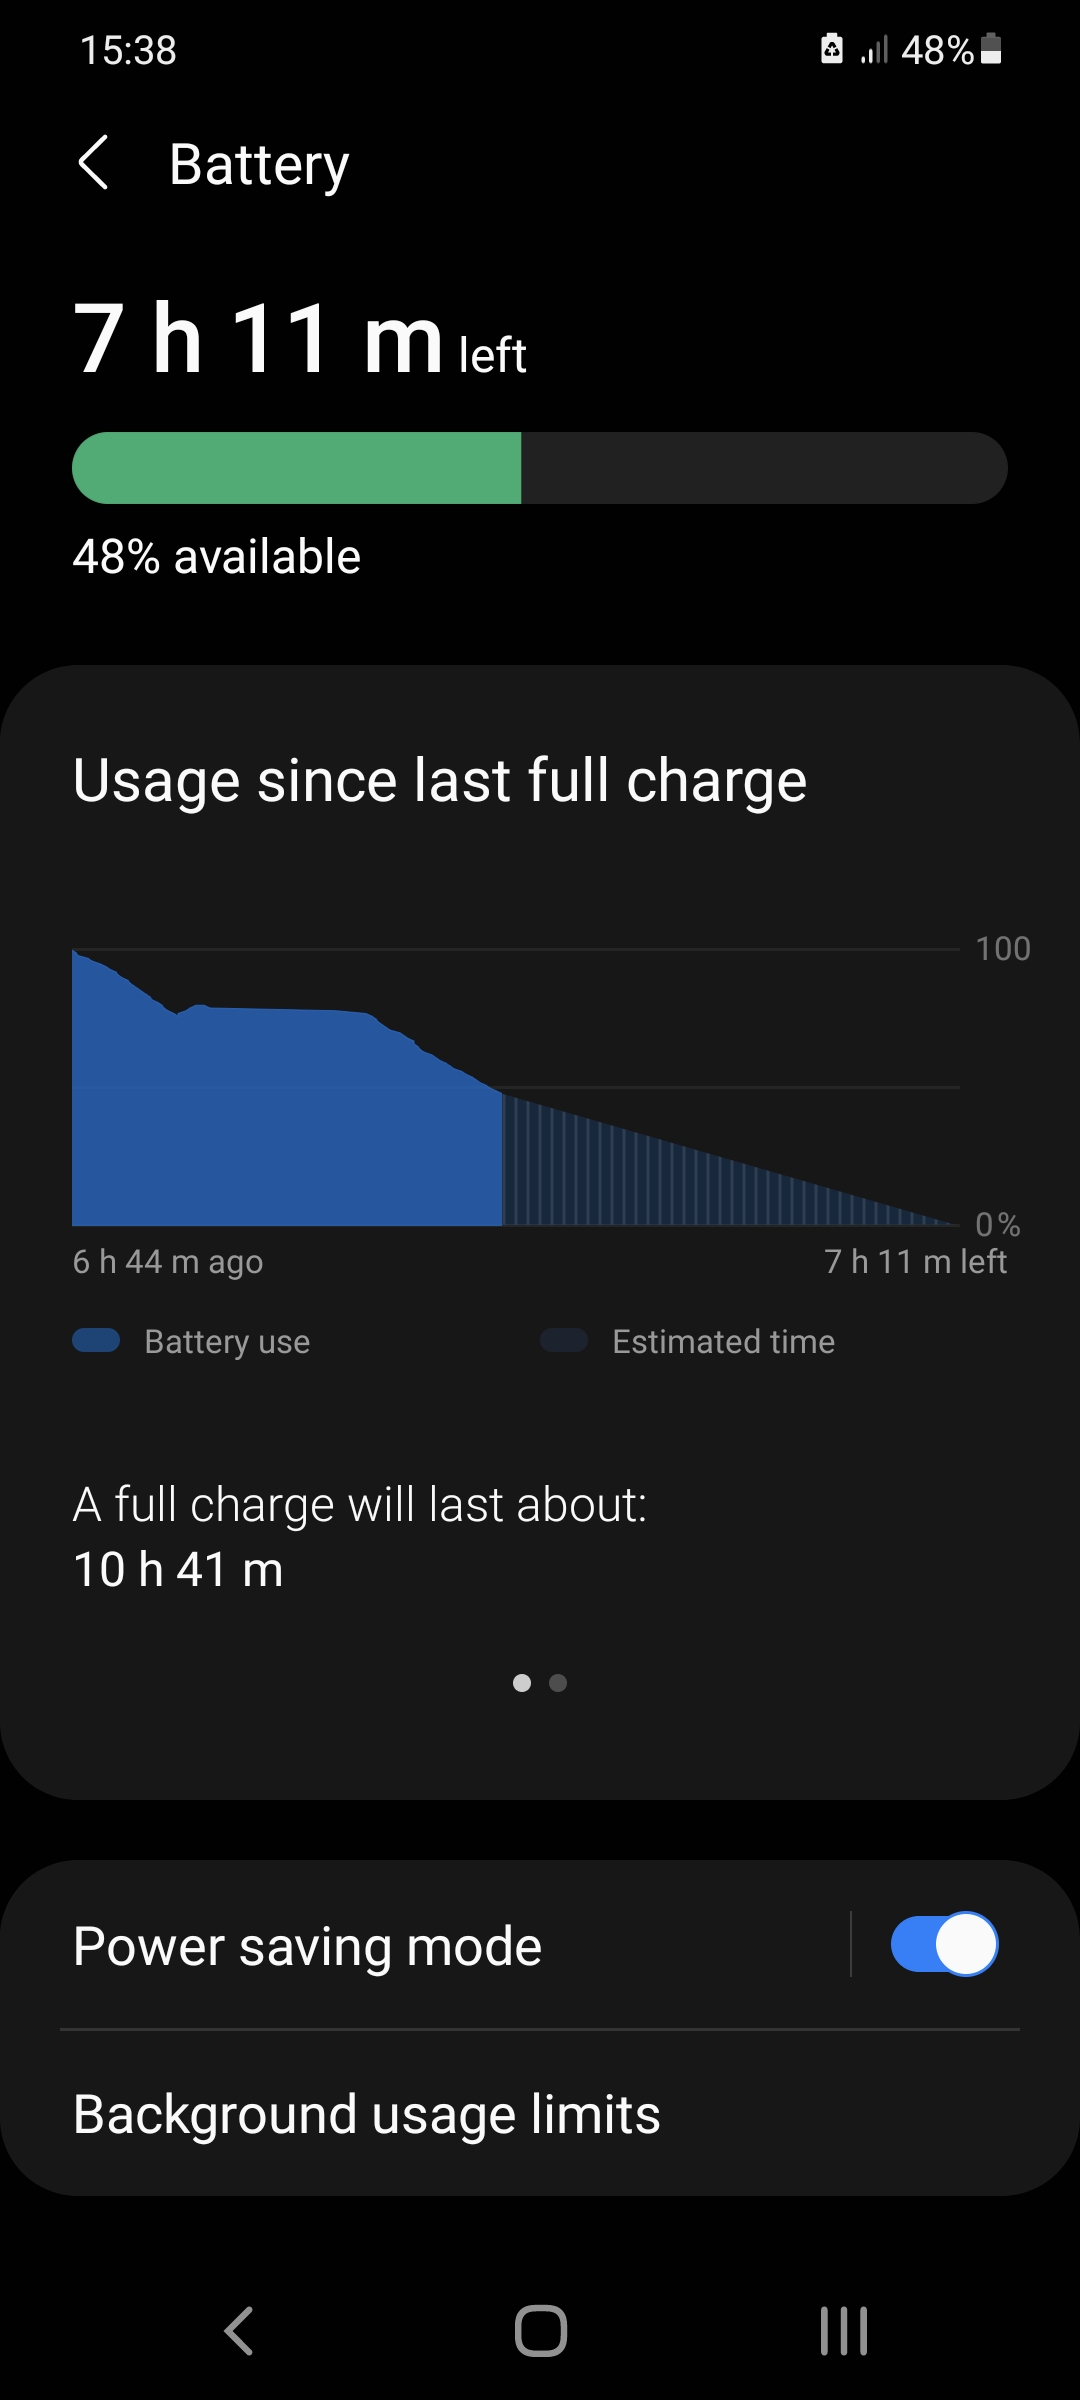 Đừng lo lắng về thời lượng pin nữa, Samsung đã giải quyết vấn đề này cho bạn với Battery Life - tính năng tiết kiệm pin thông minh. Tận hưởng trải nghiệm dài hơn với một lần sạc đầy và chơi game, xem phim, hỗ trợ công việc hàng giờ đồng hồ không lo gián đoạn.